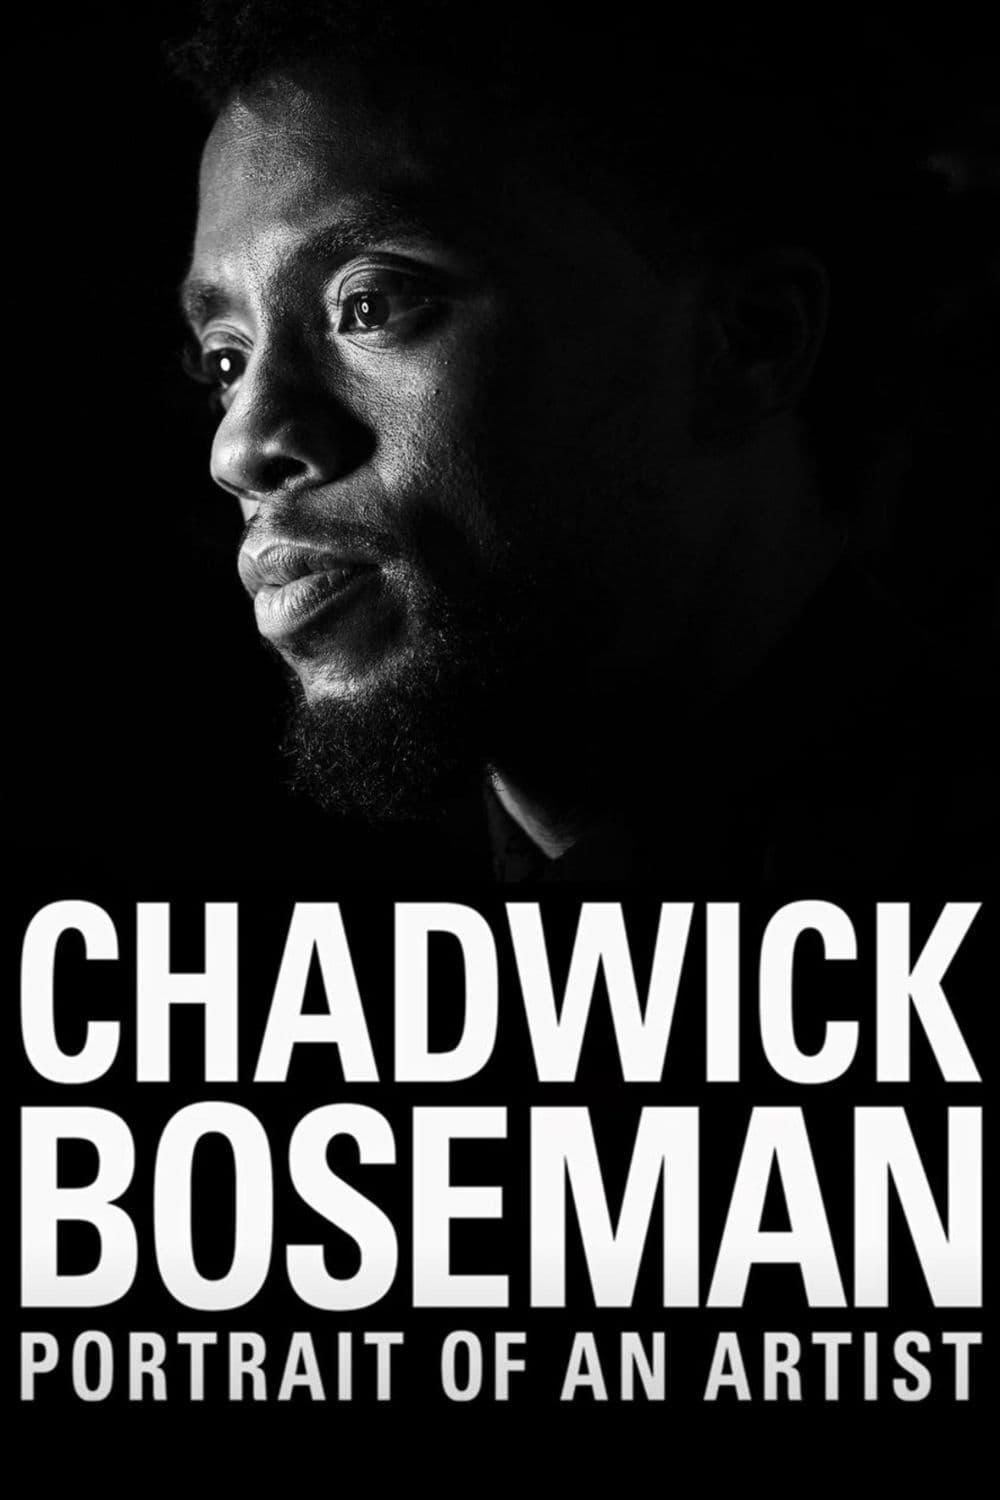 2021美国纪录片《查德维克·博斯曼：一位艺术家的肖像》百度云迅雷下载